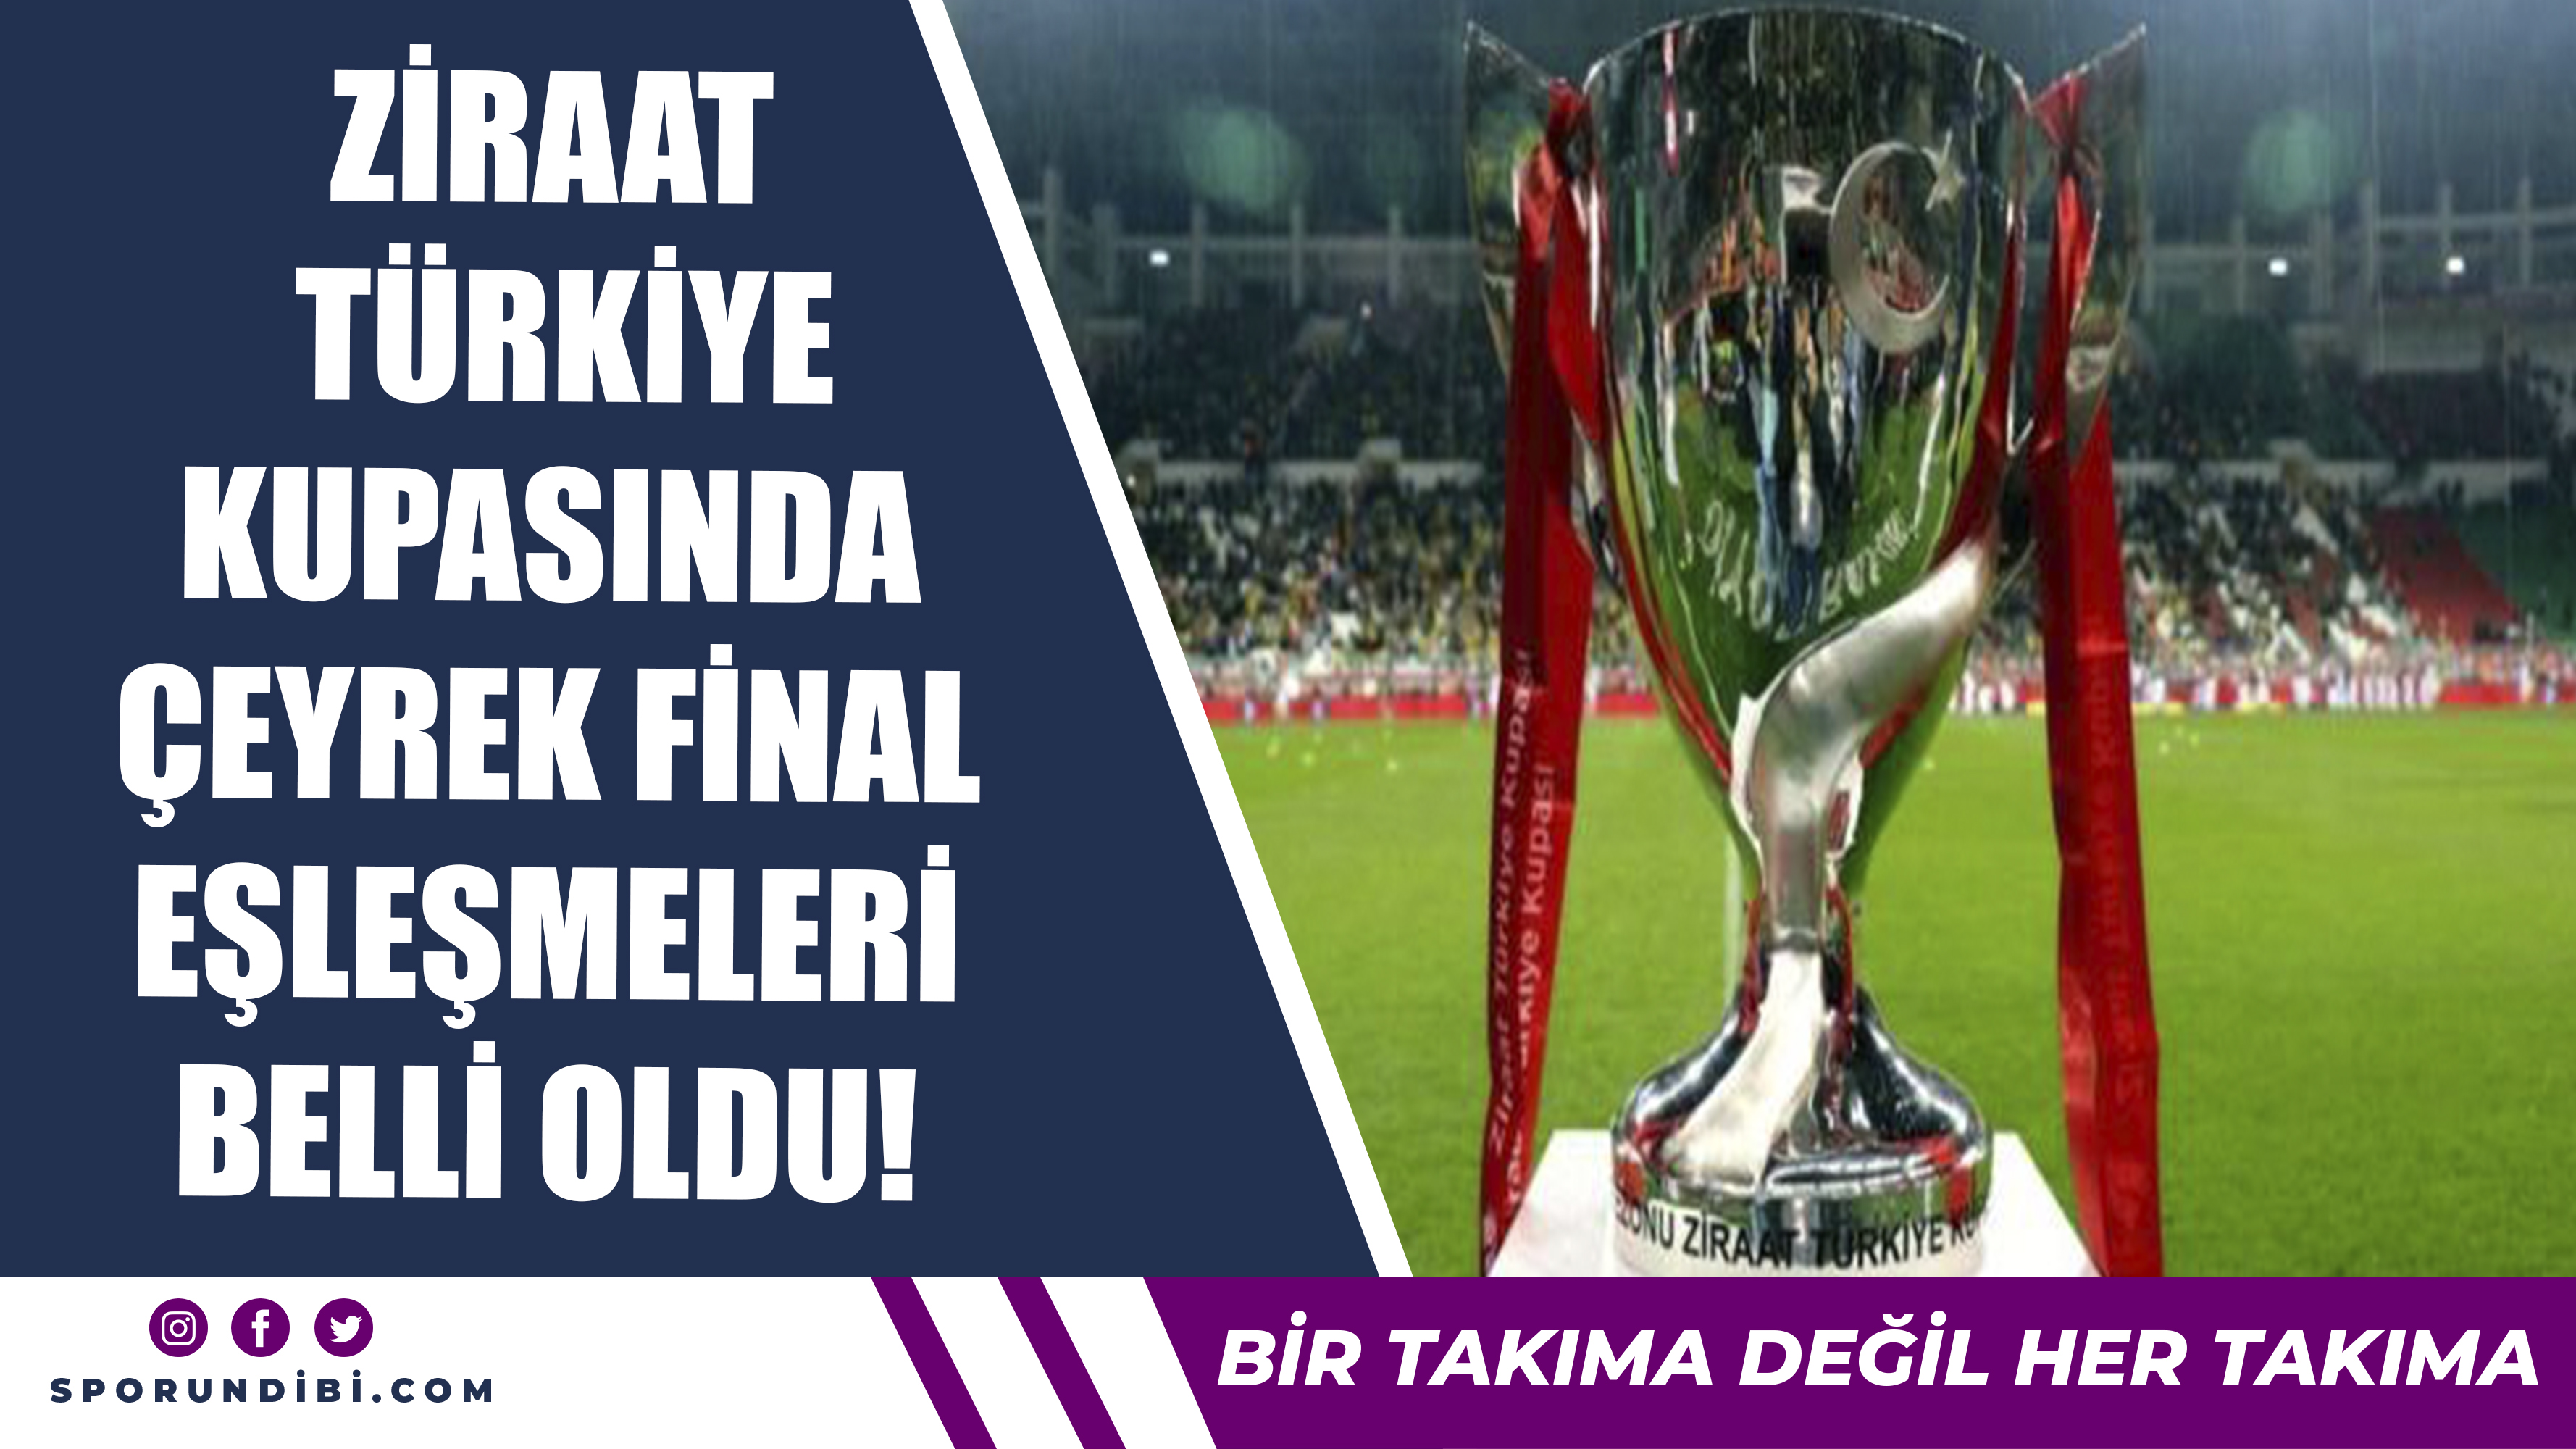 Ziraat Türkiye Kupası'nda Çeyrek Final Eşleşmeleri Belli Oldu!